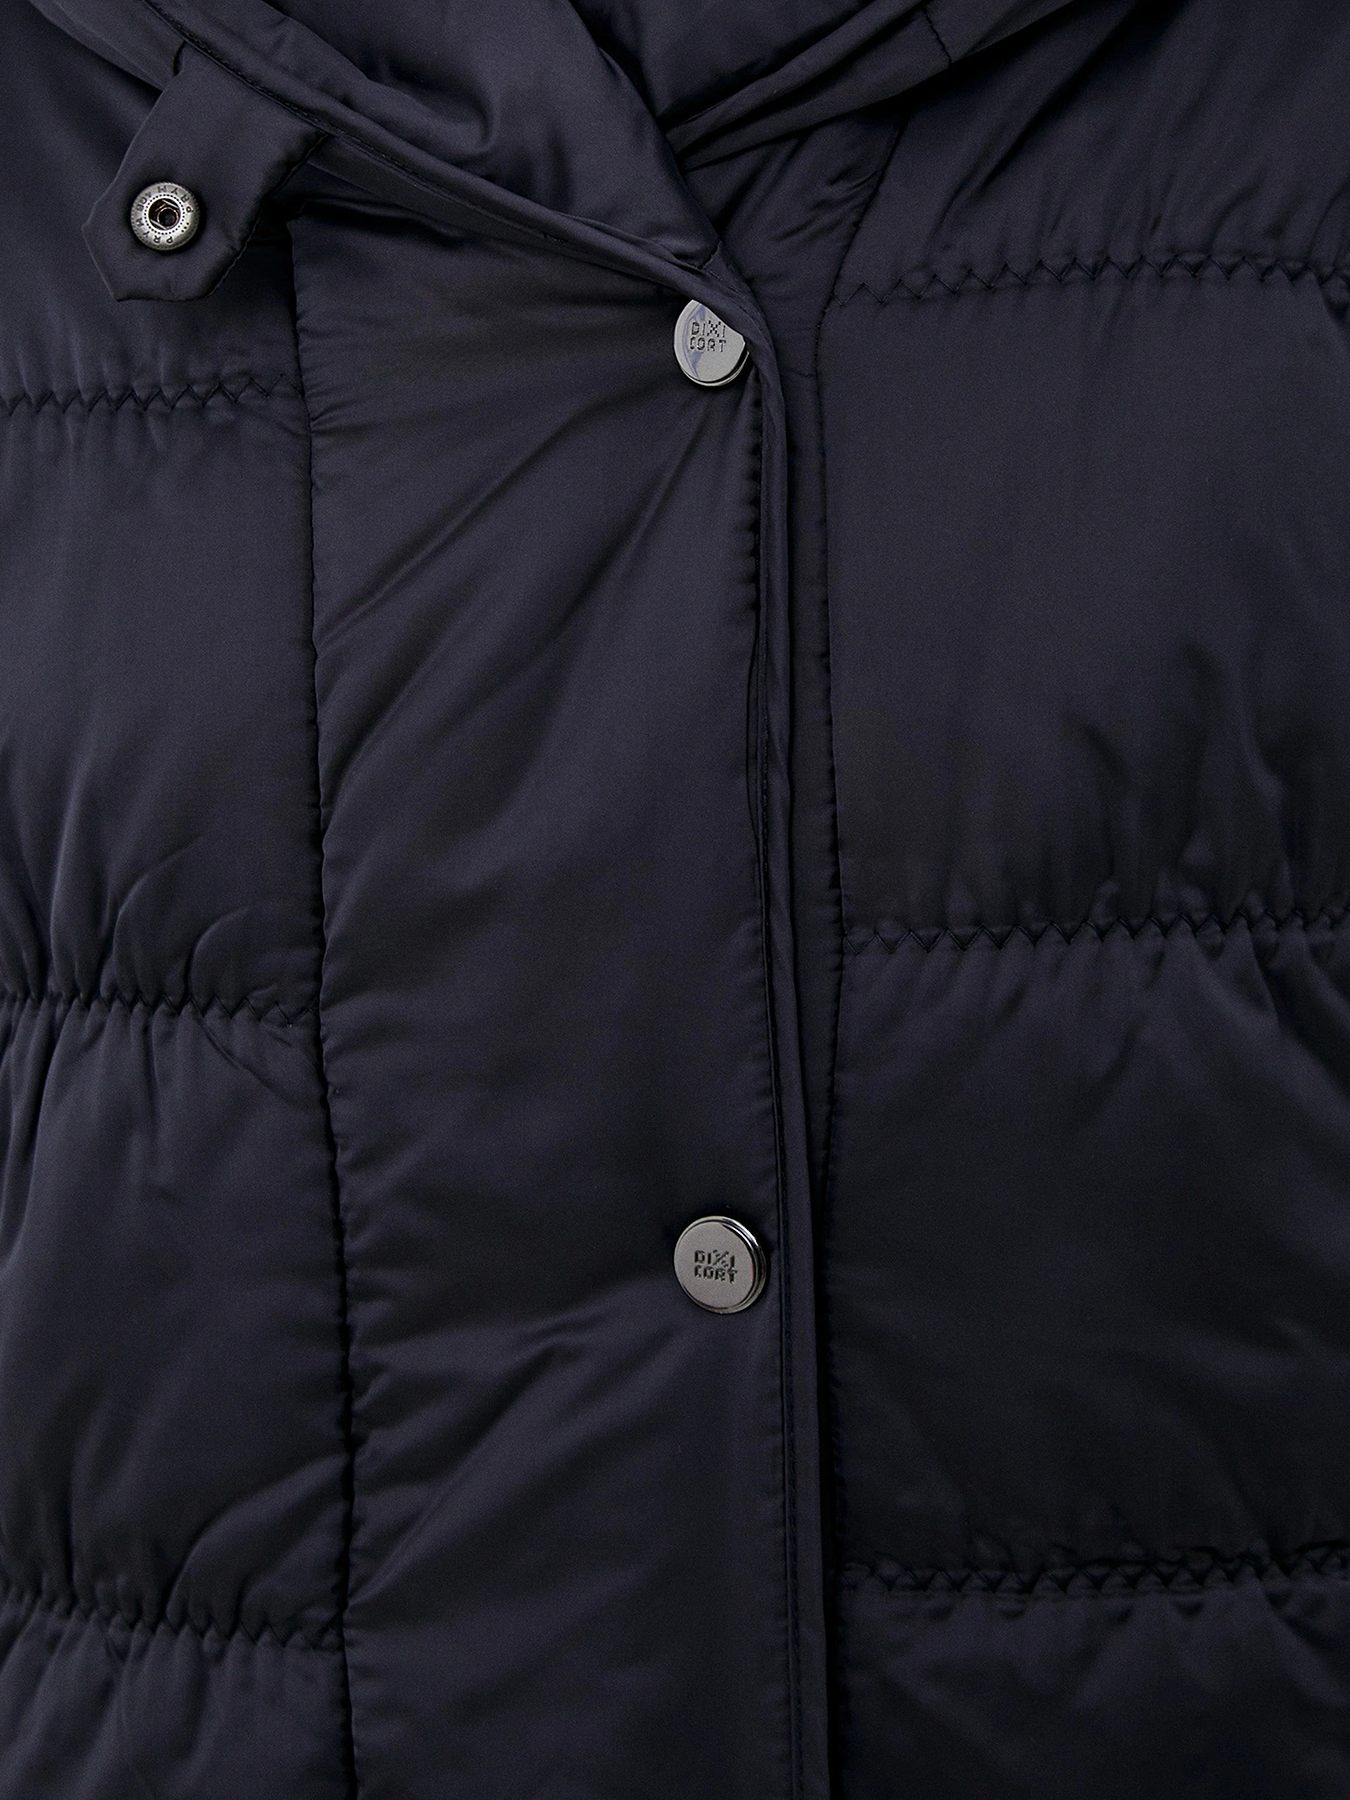 Пальто зимнее Dixi Coat 433576-020, цвет темно-синий, размер 44 - фото 3